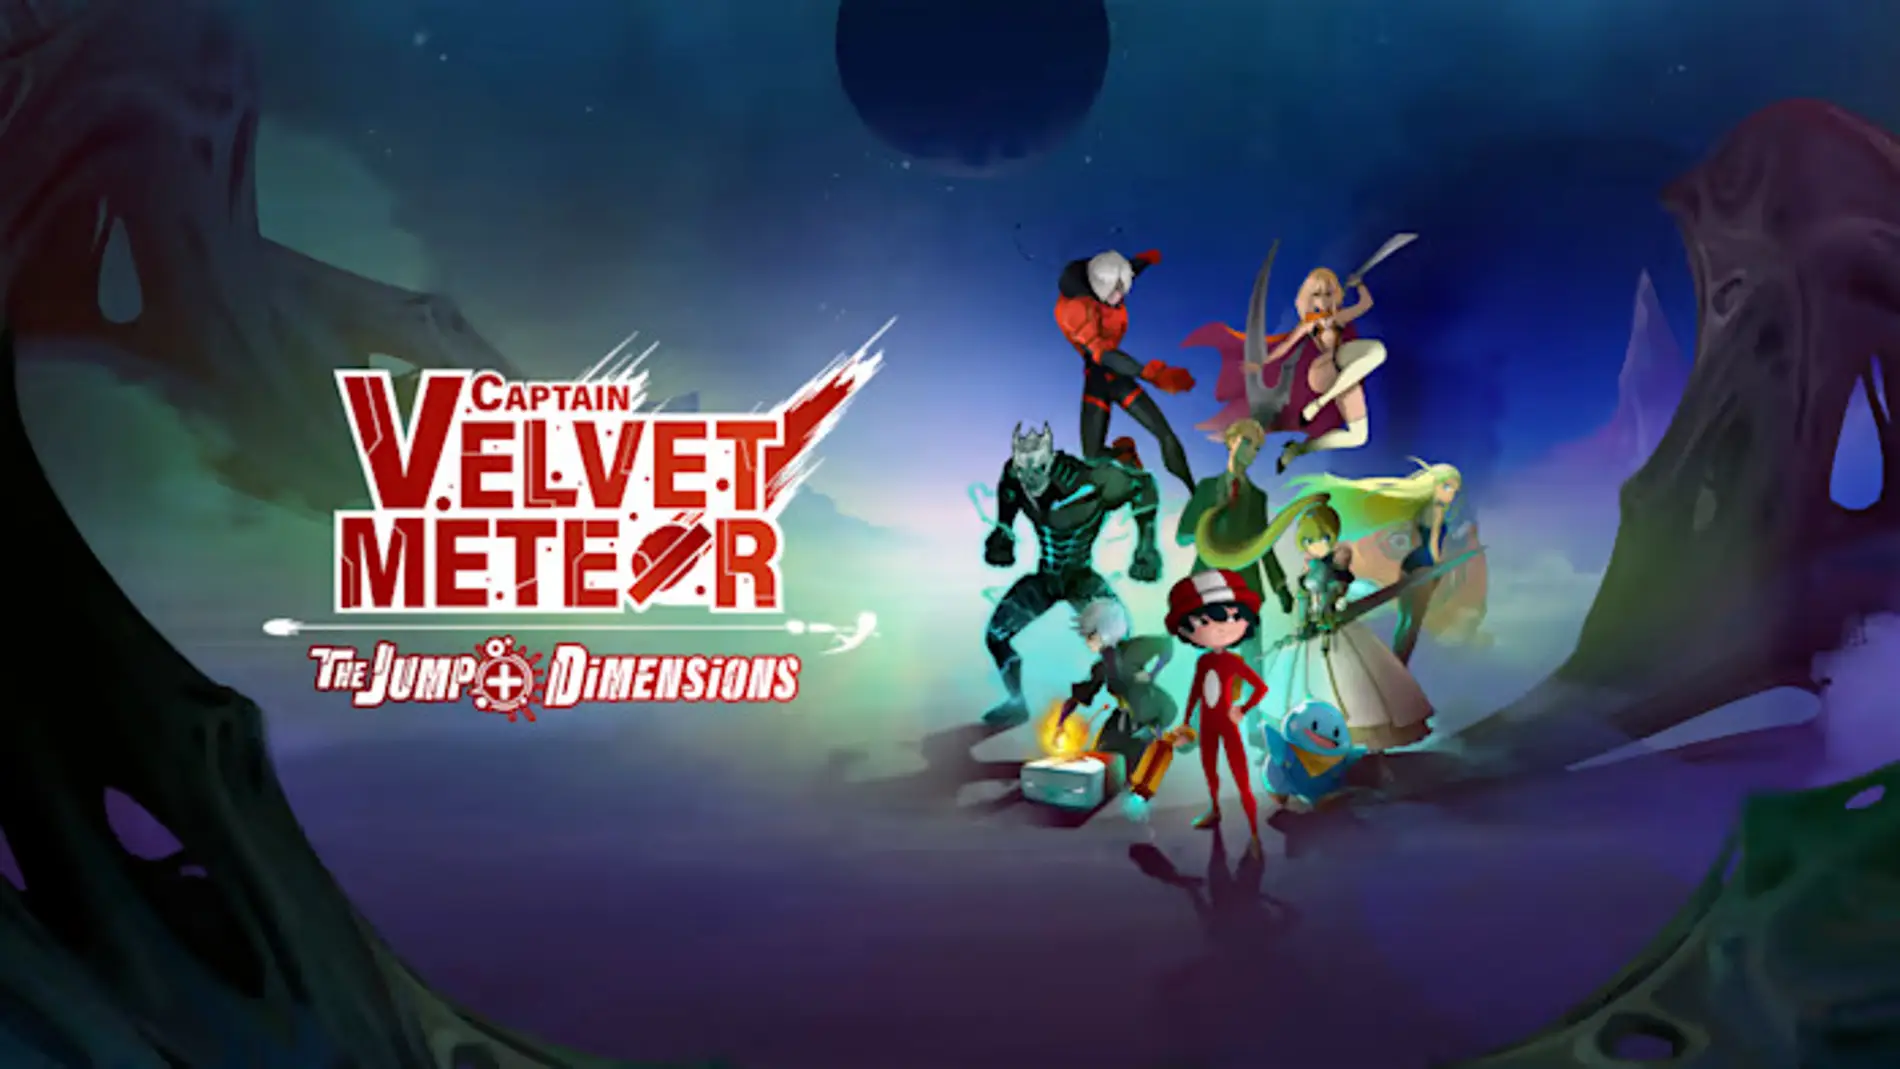 Captain Velvet Meteor